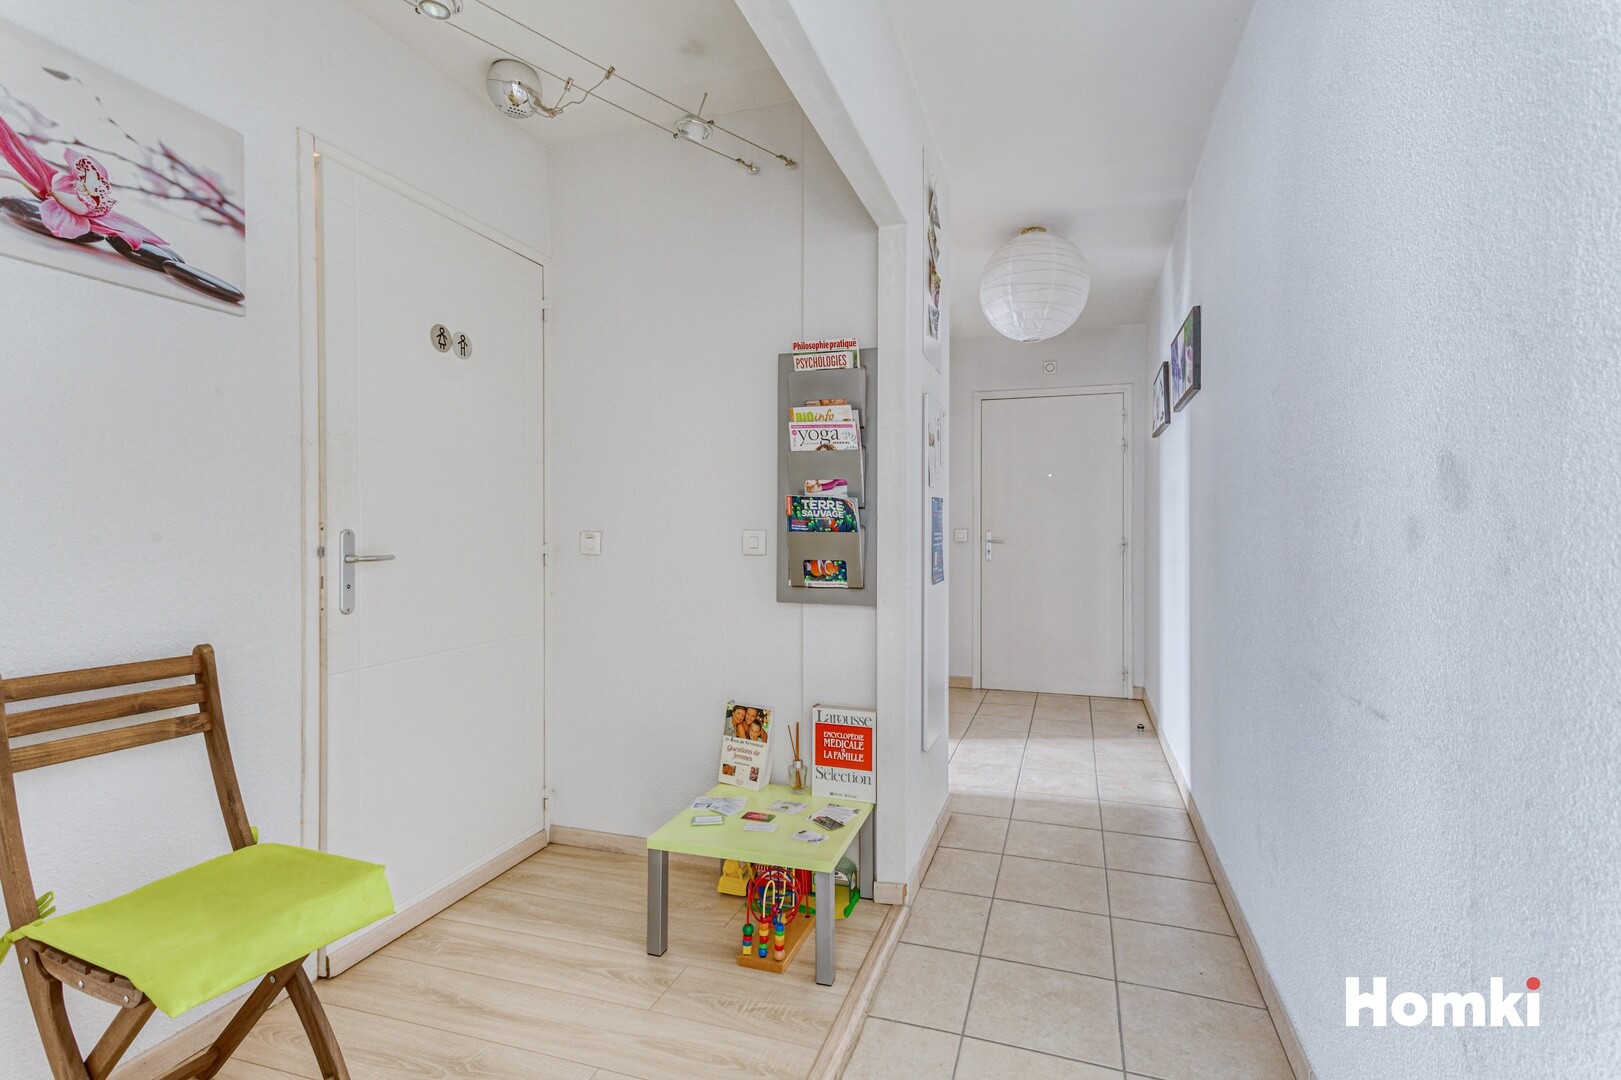 Homki - Vente Appartement  de 58.0 m² à Chambéry 73000